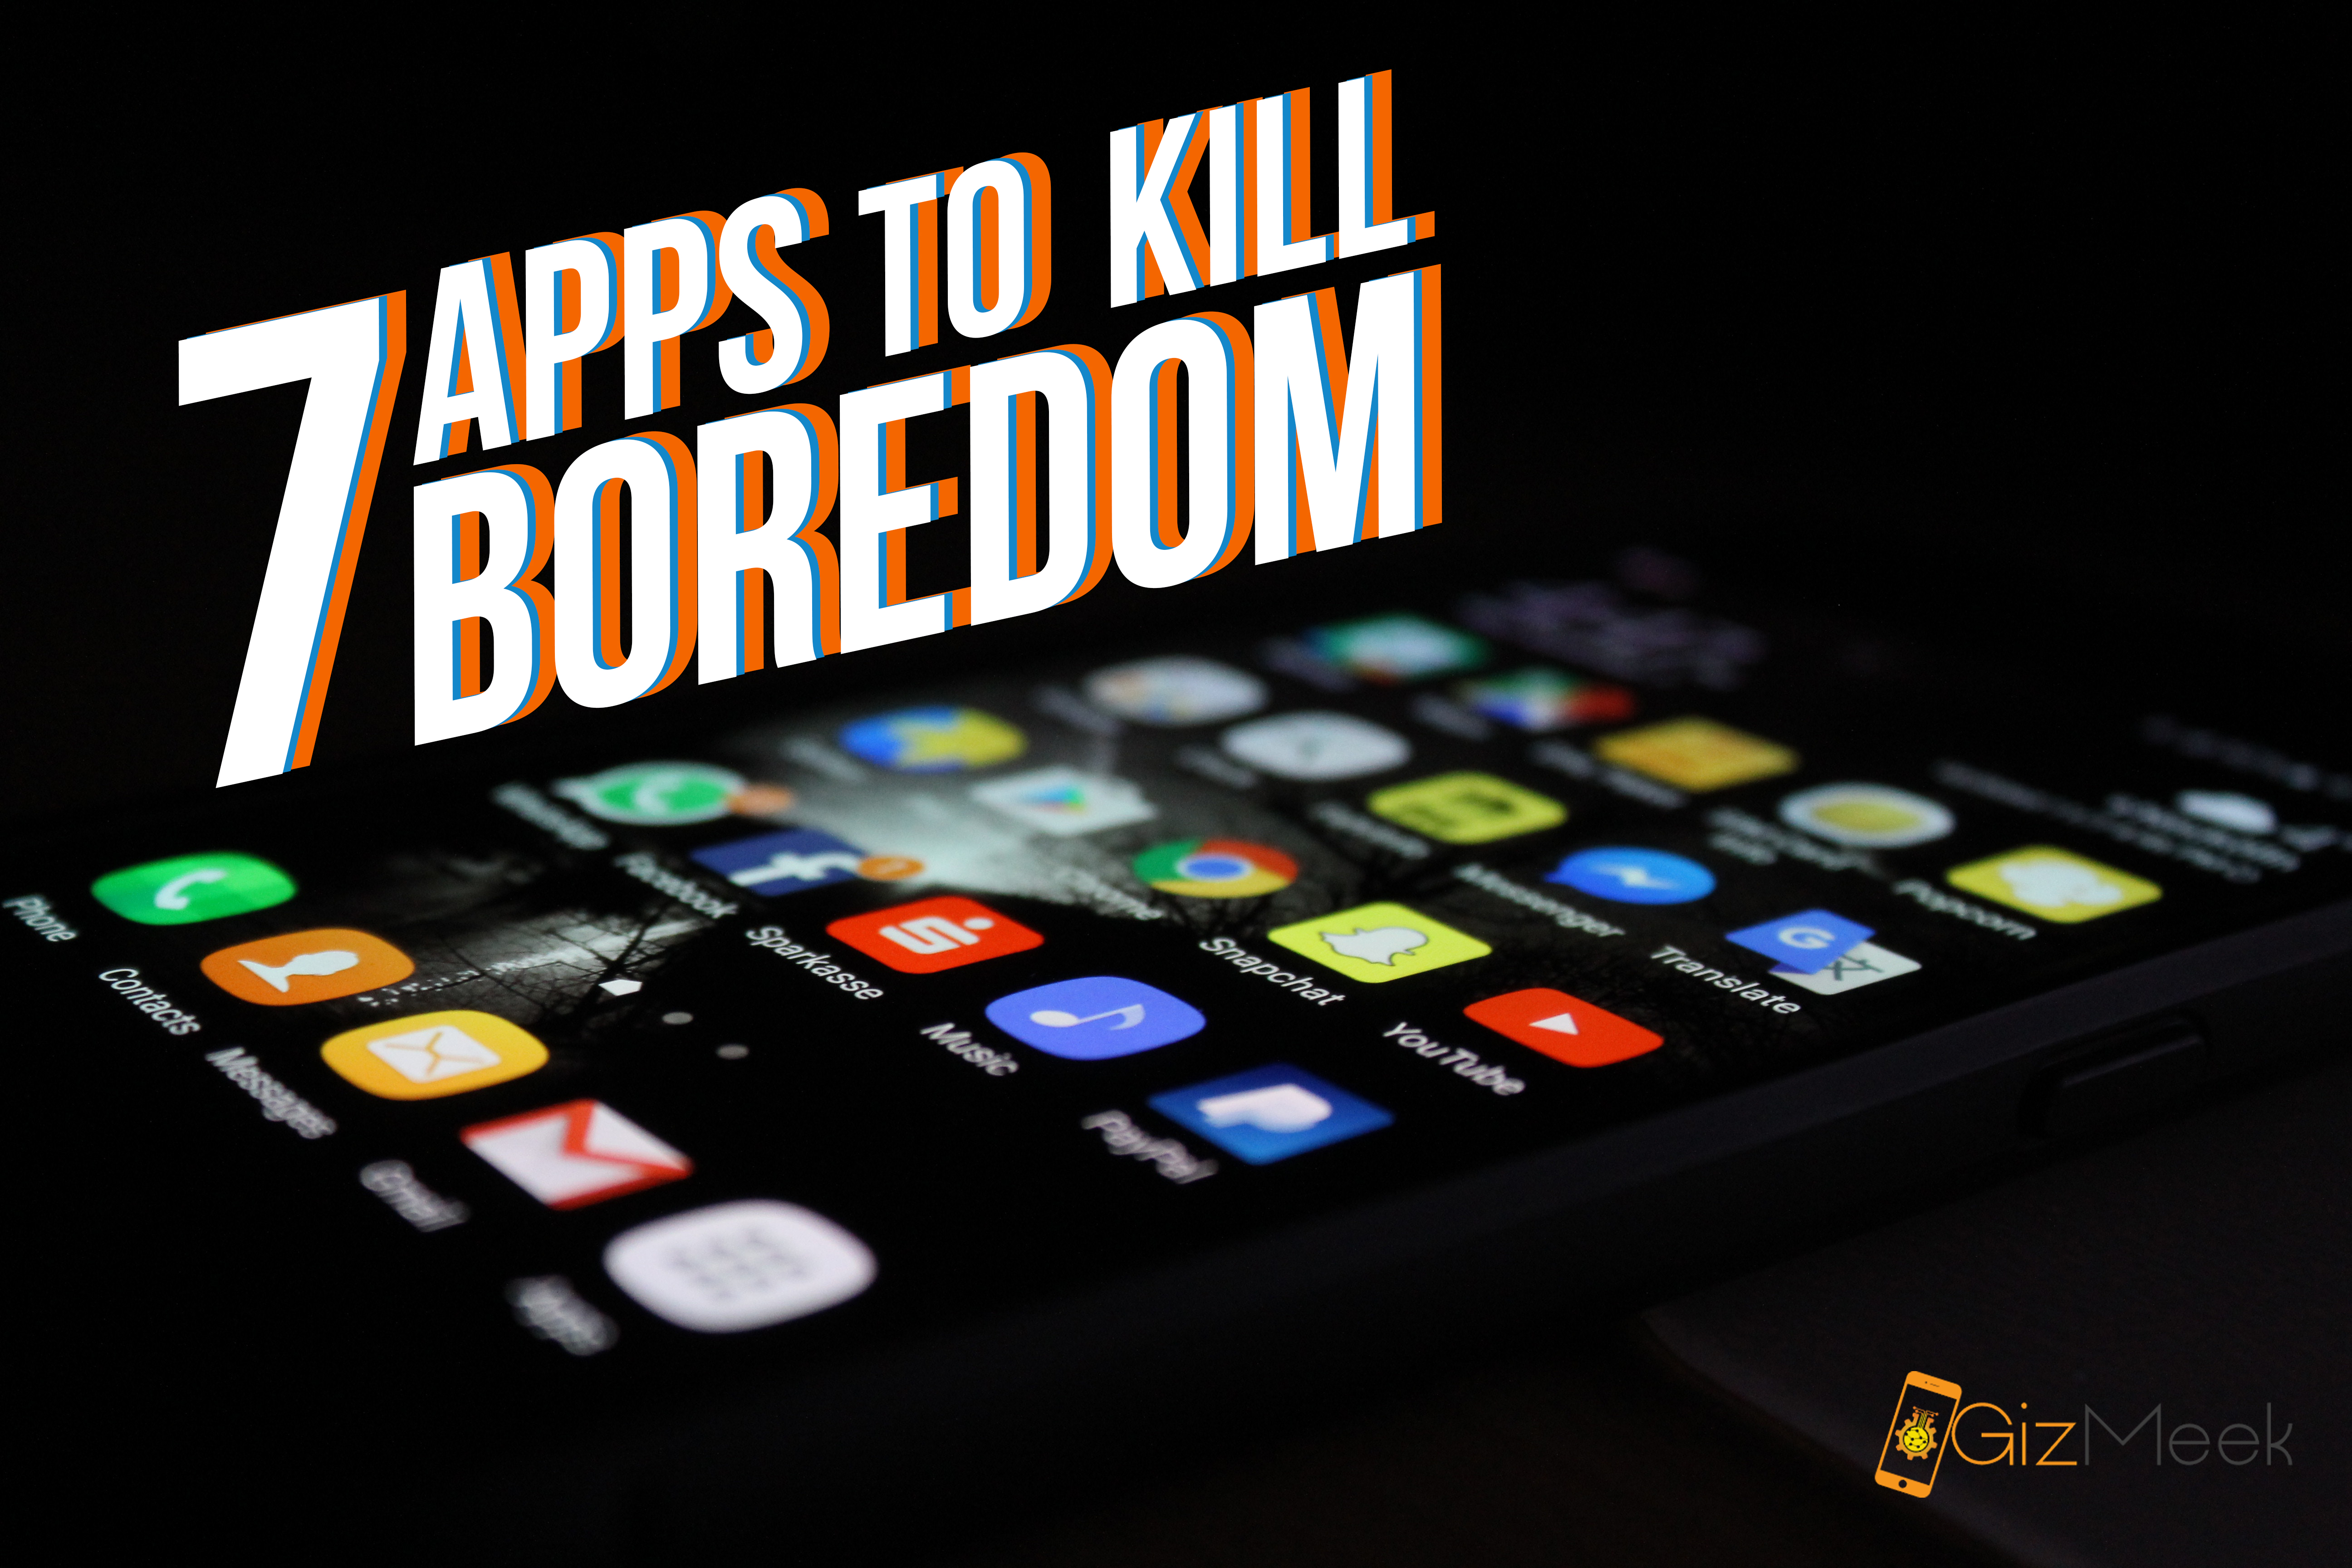 Apps to kill boredom